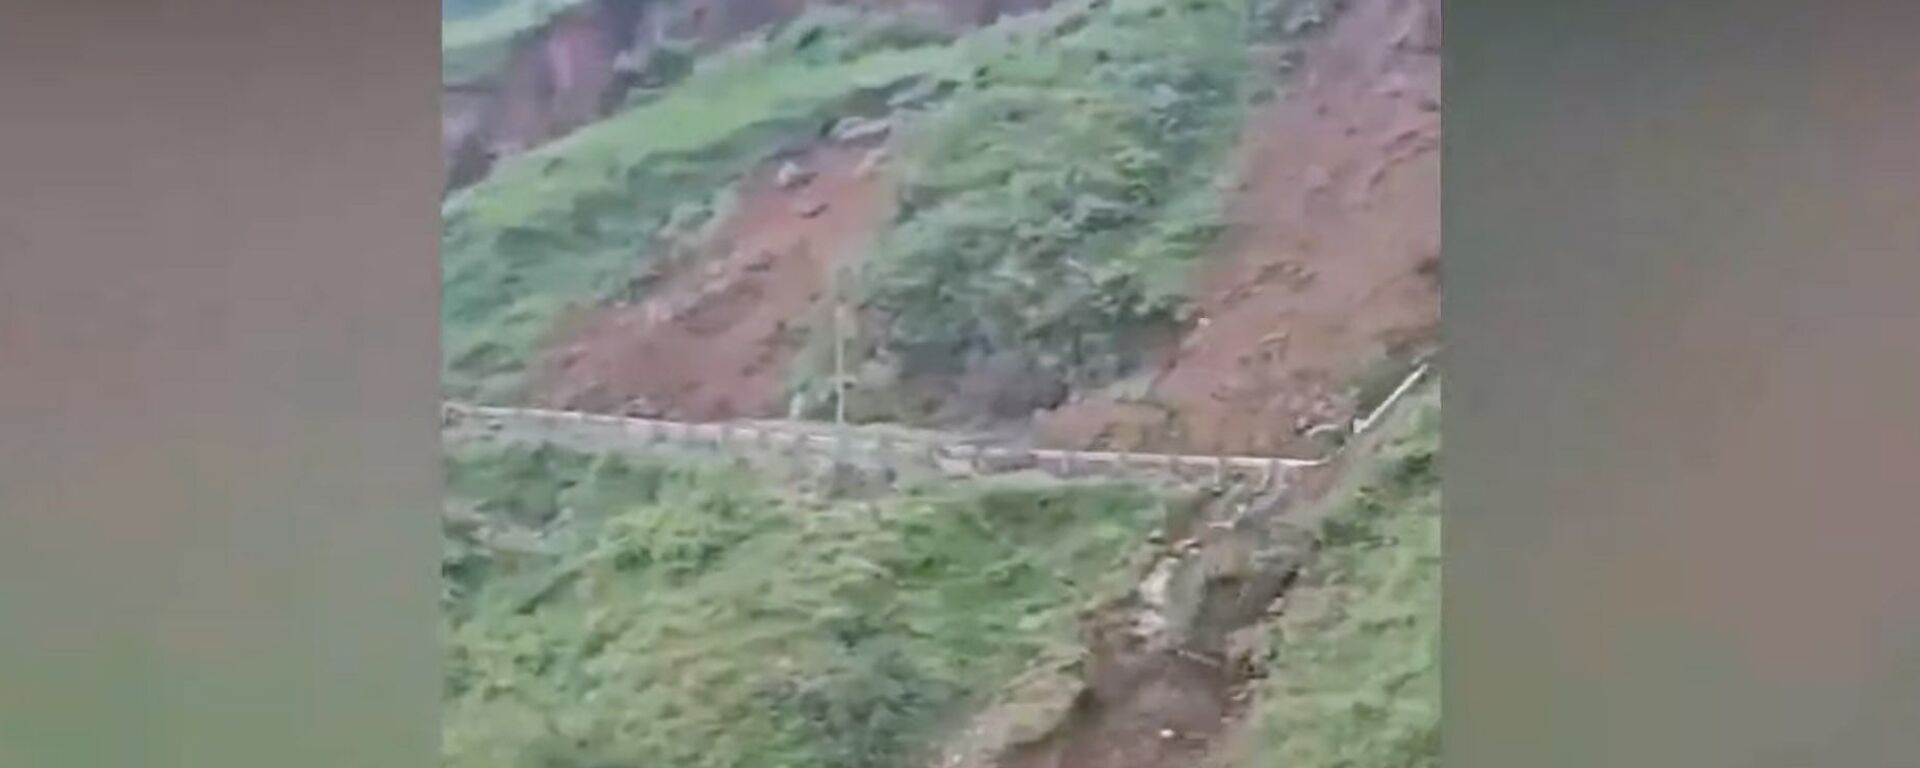 Огромная часть горы упала перед туристами в Индии — видео - Sputnik Кыргызстан, 1920, 01.08.2021